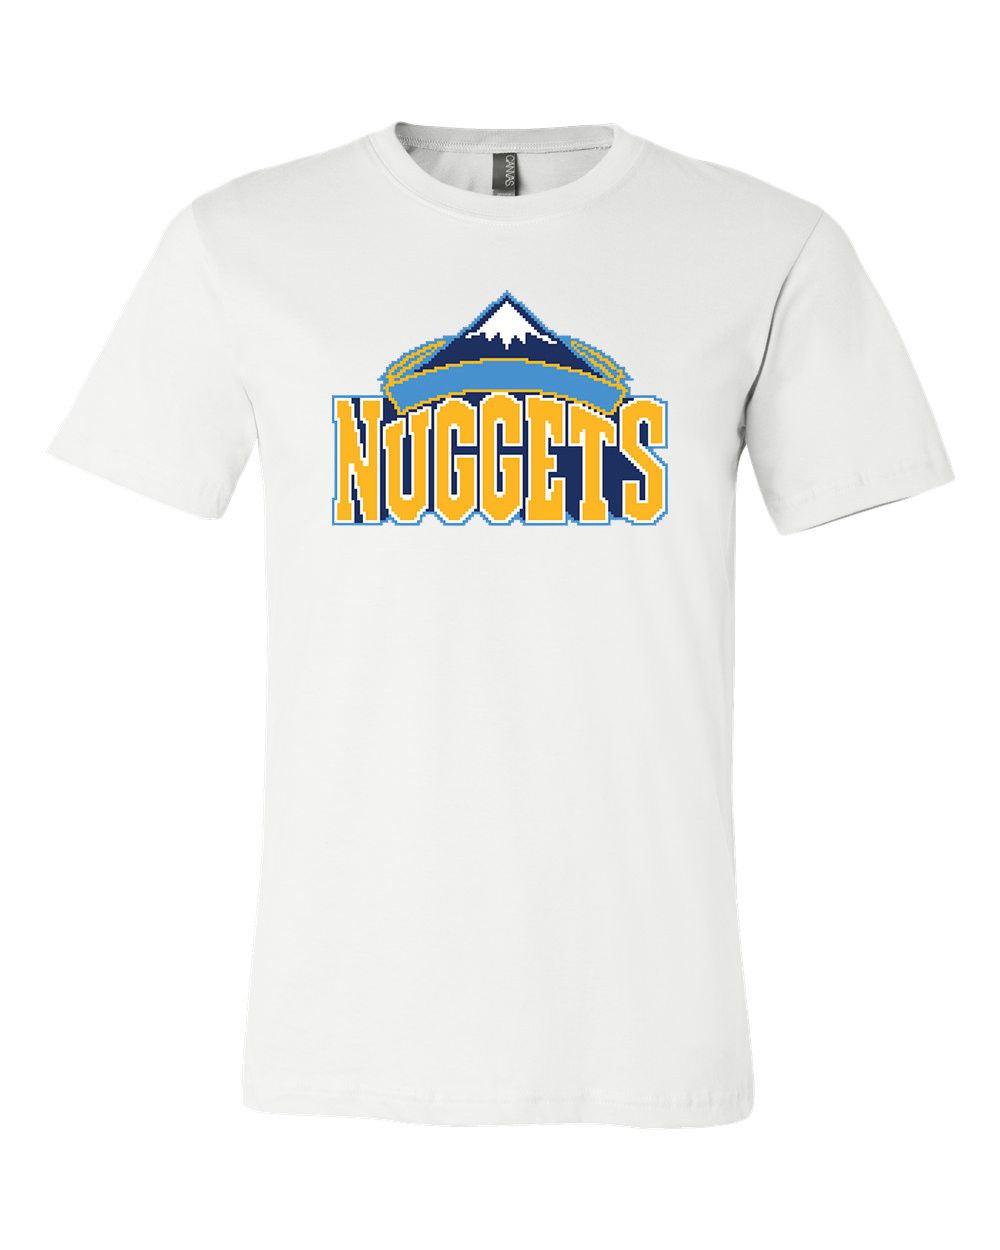 nuggets shirts